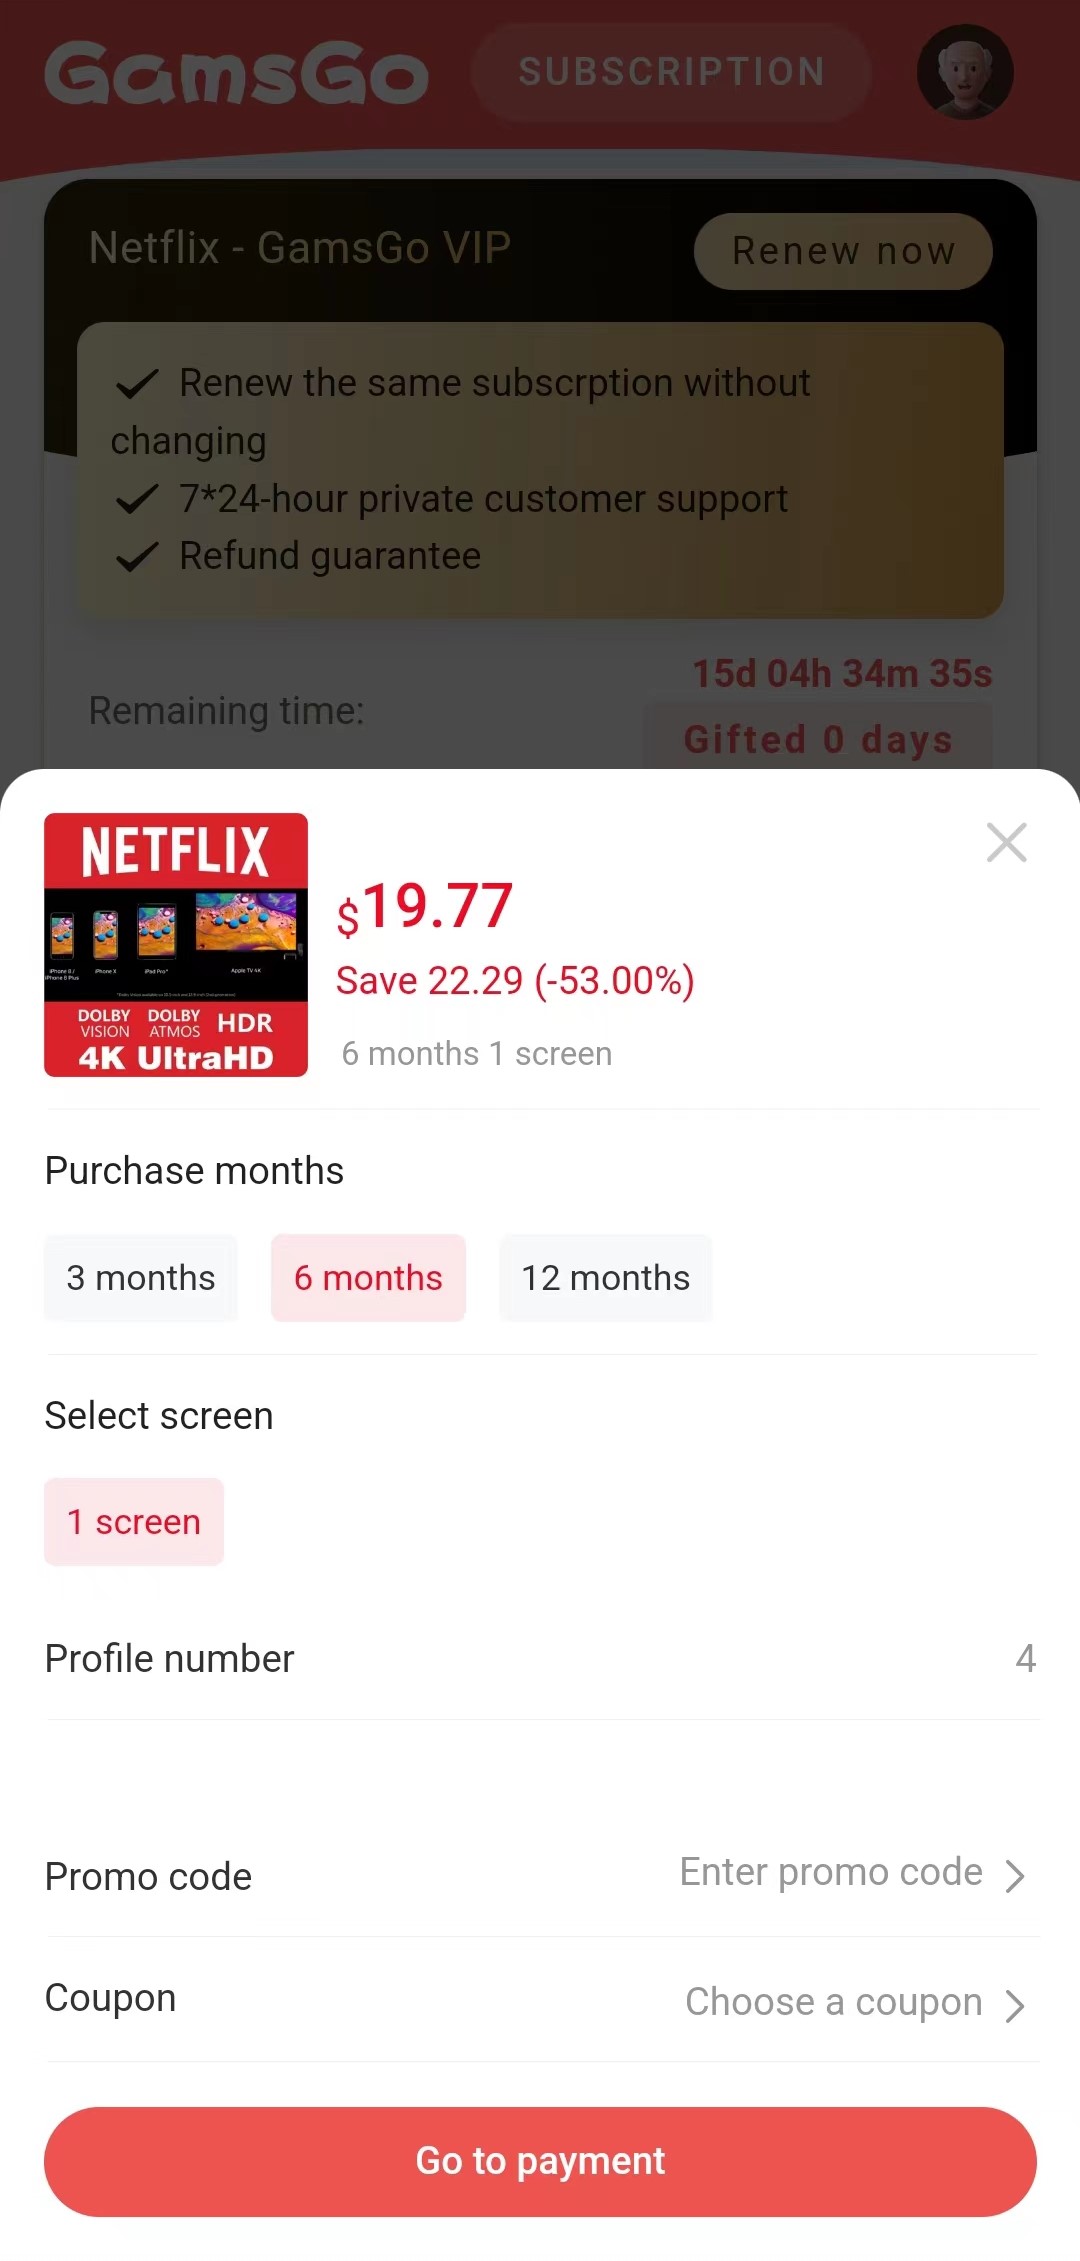 Comment renouveler l'abonnement Netflix sur GamsGo